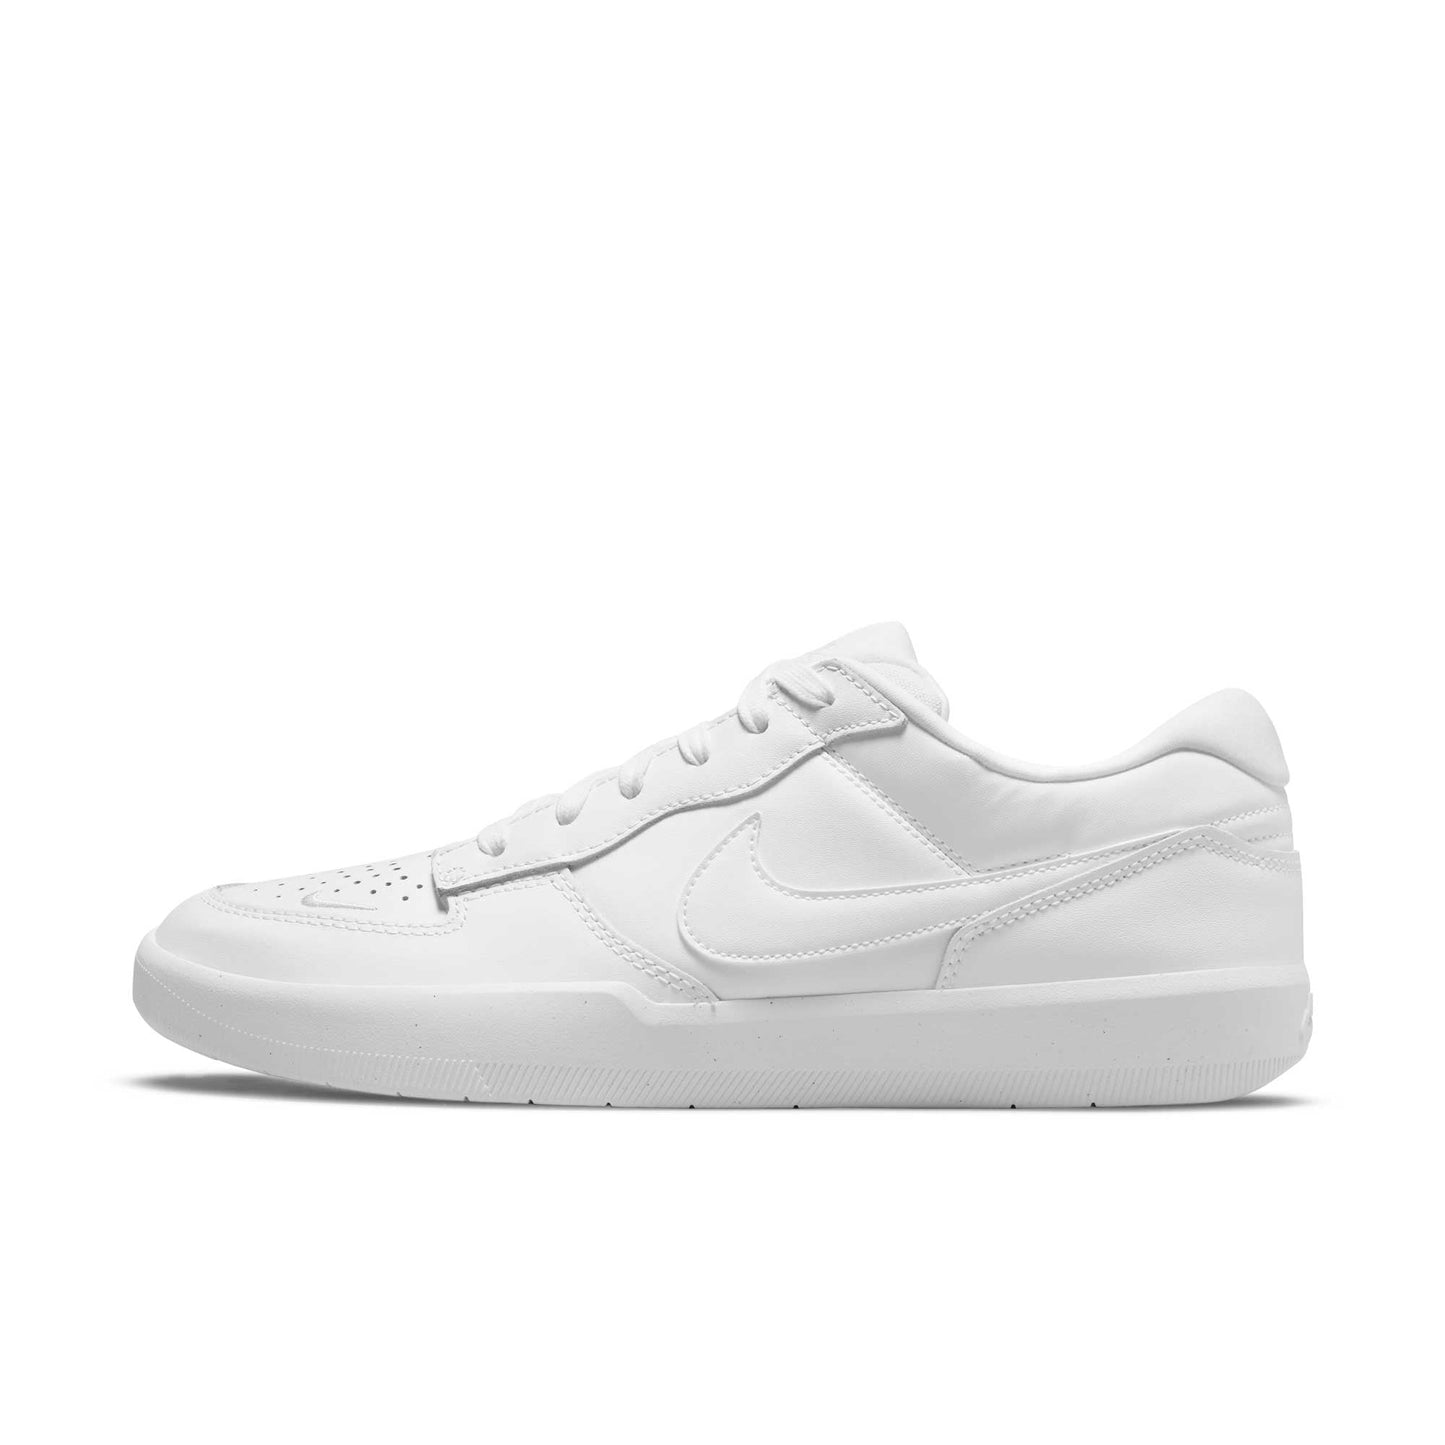 Nike SB Force 58 Premium, white/white-white-white - Tiki Room Skateboards - 5